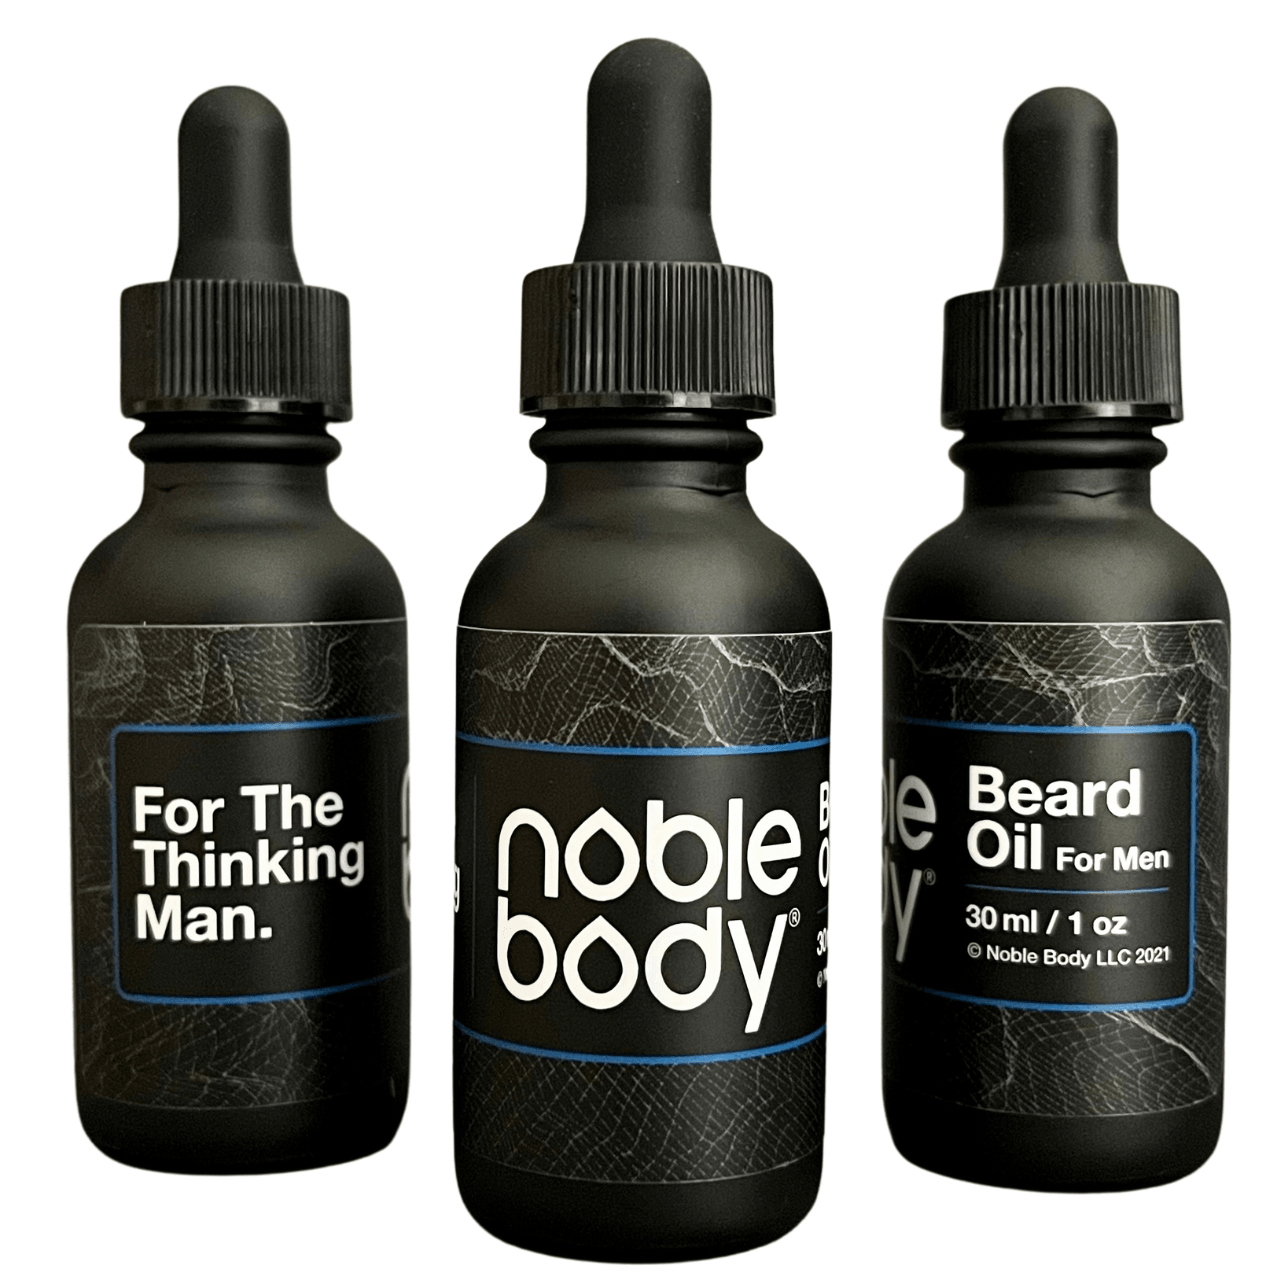 A Thinking Man's Beard Oil - Noble Body